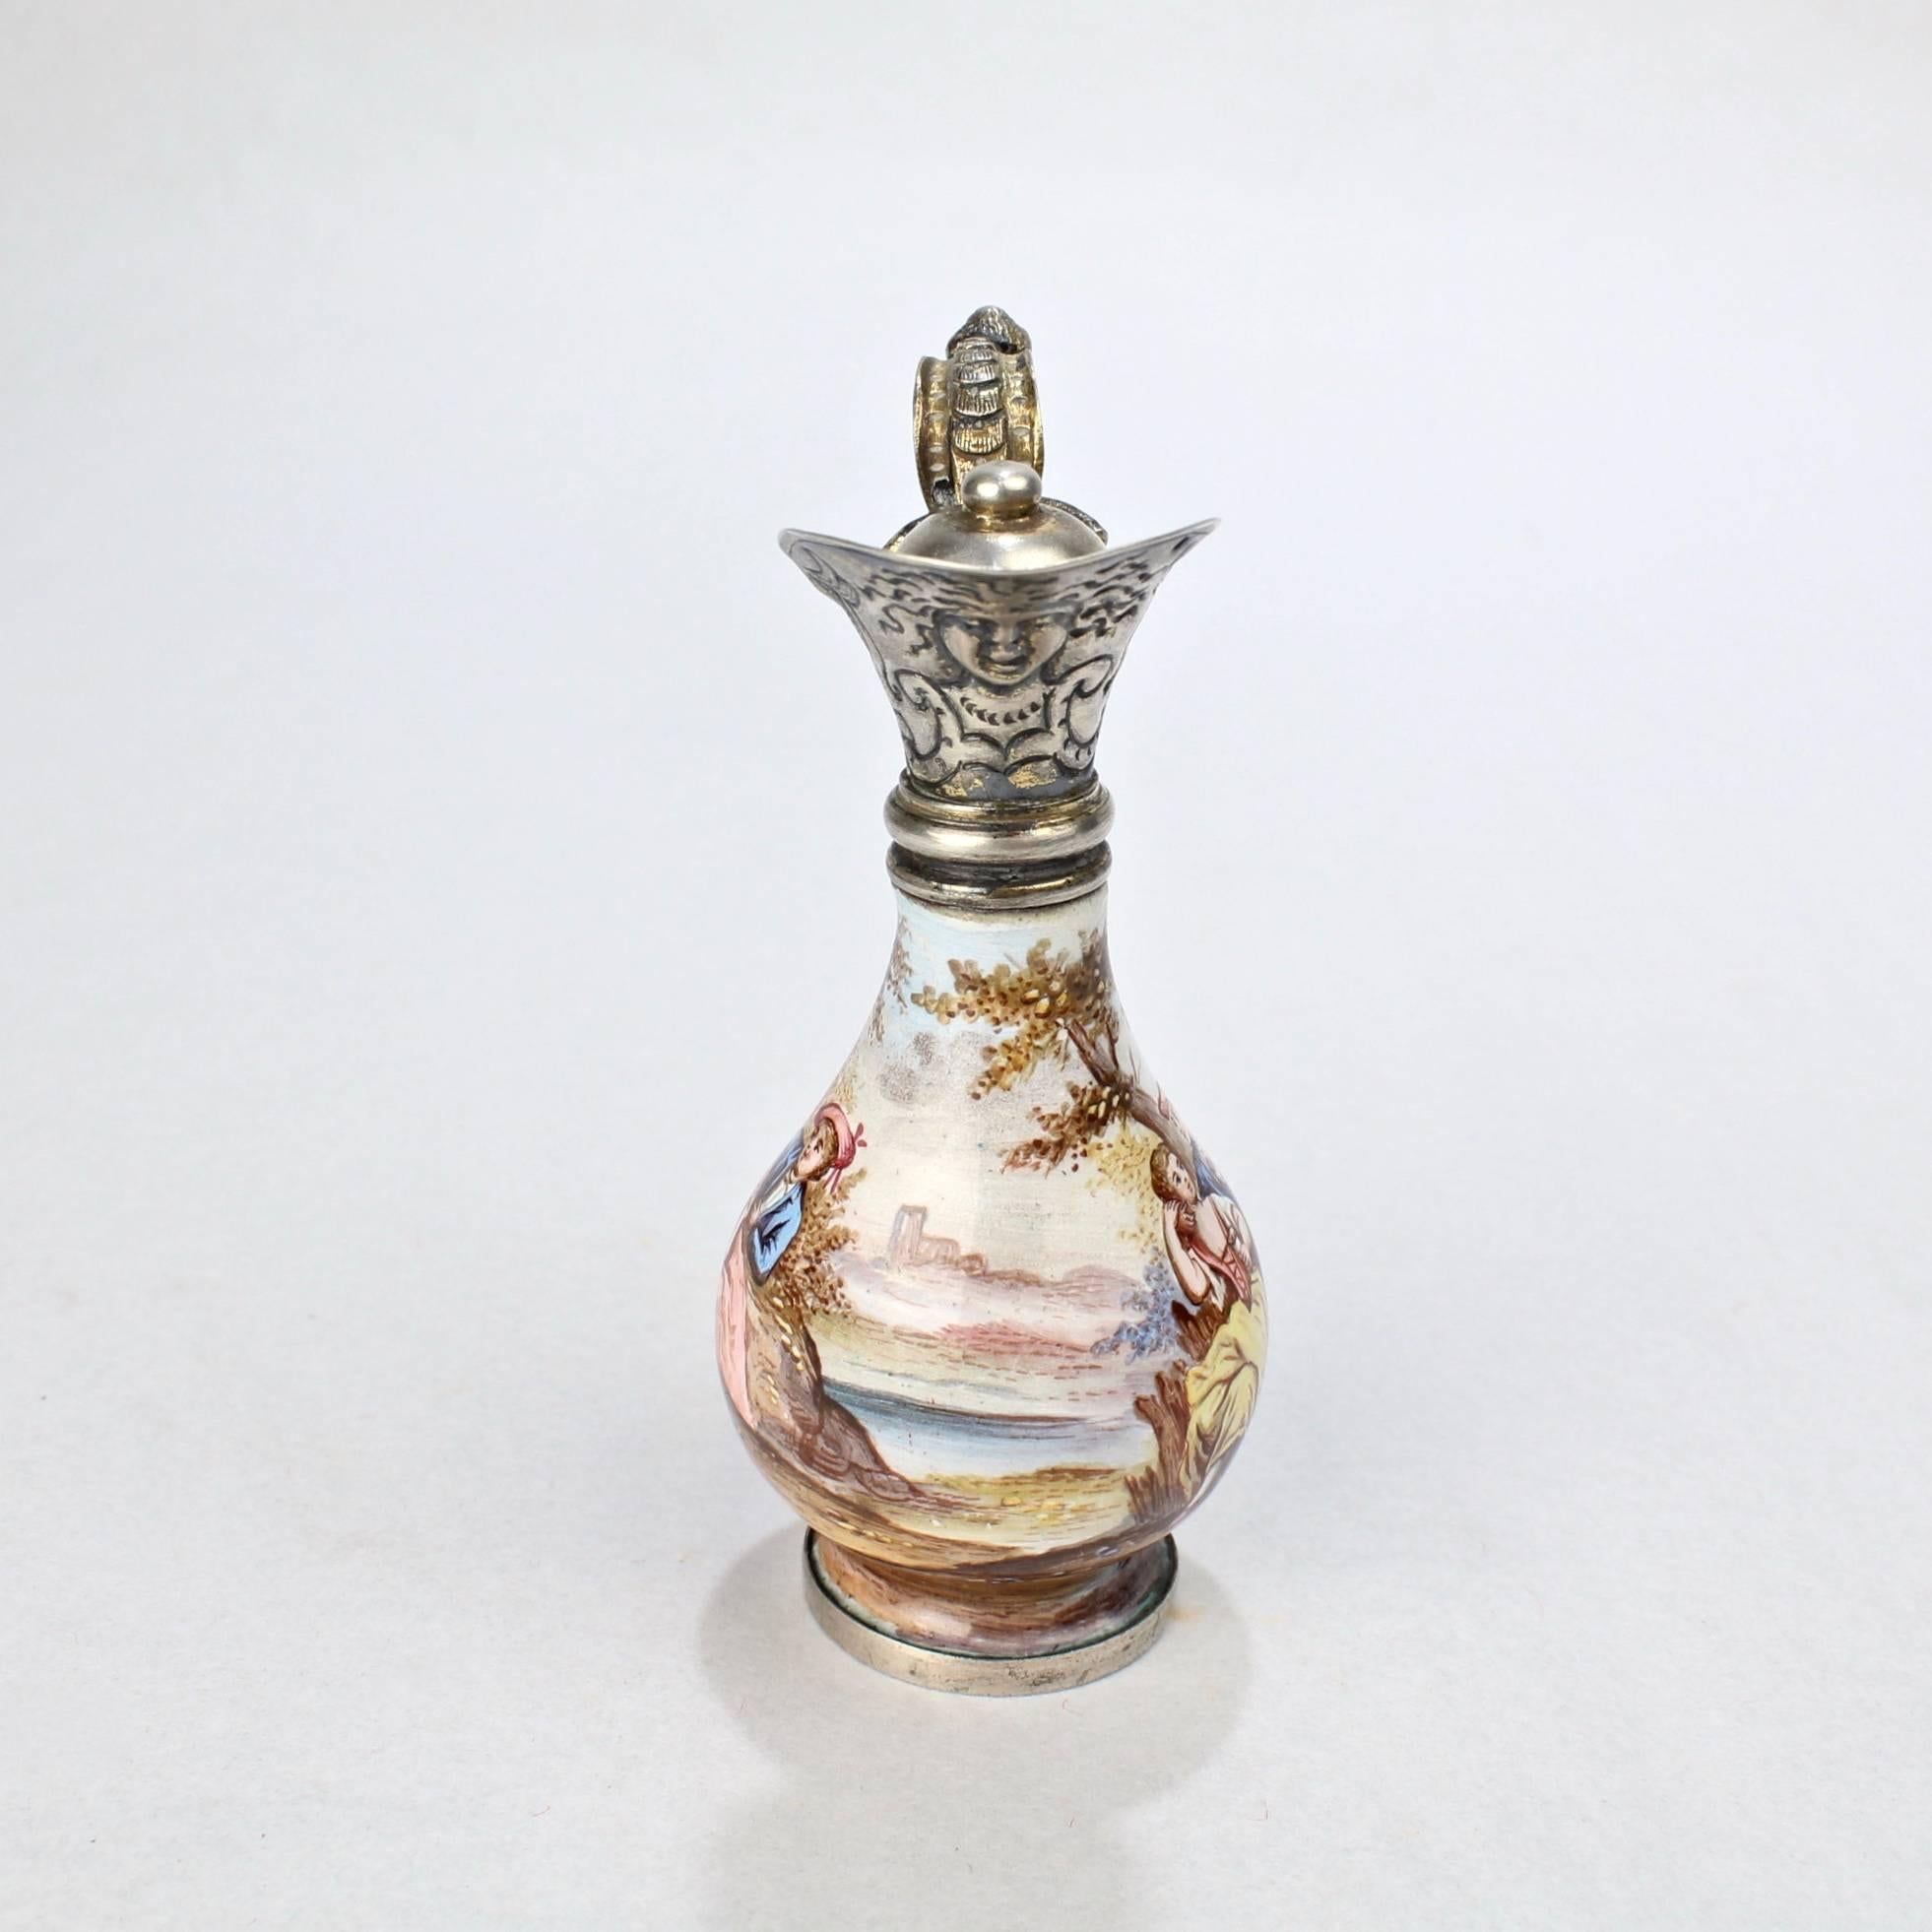 Austrian Signed Hermann Boehm Viennese Enamel & Silver Miniature Ewer Form Perfume Bottle